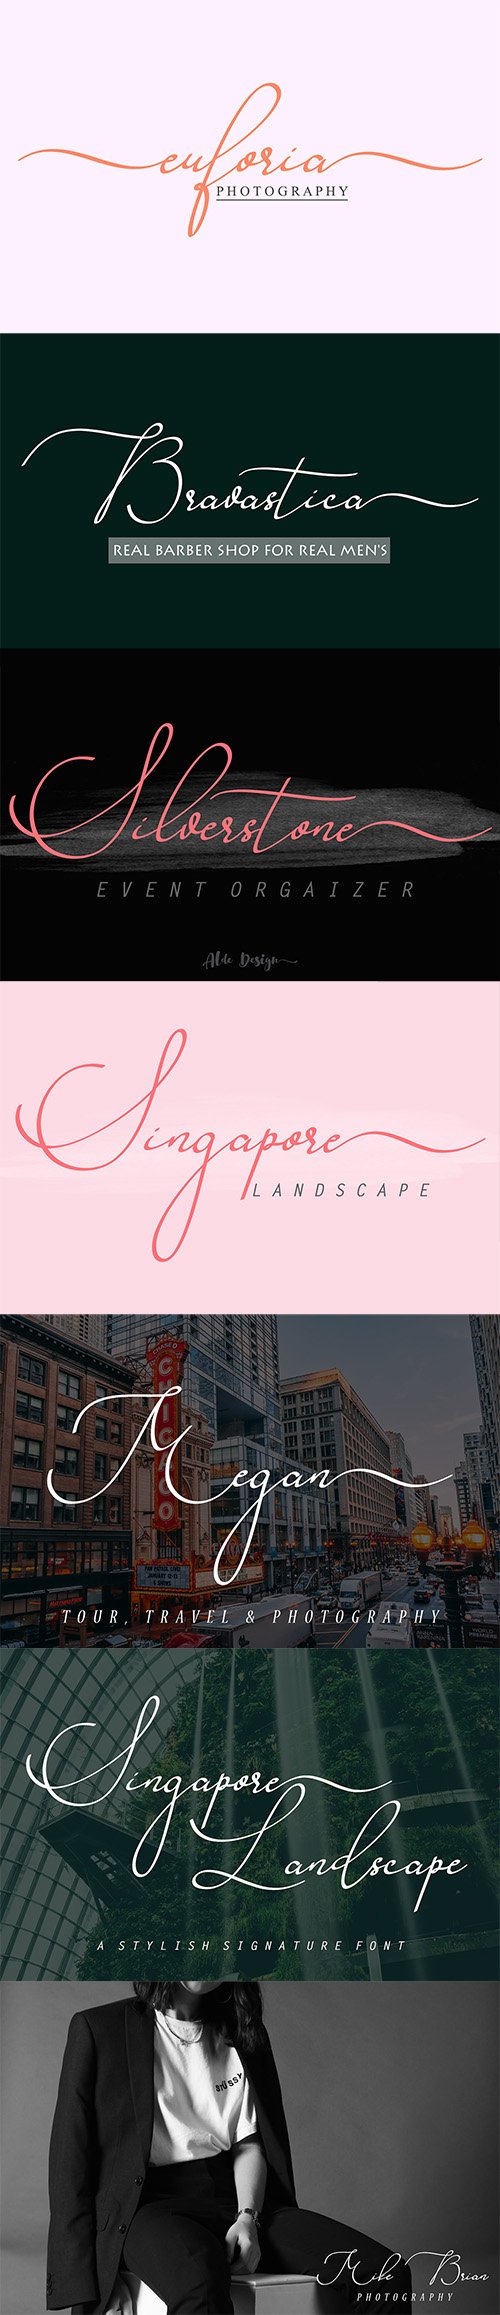 Singapore Landscape 197545